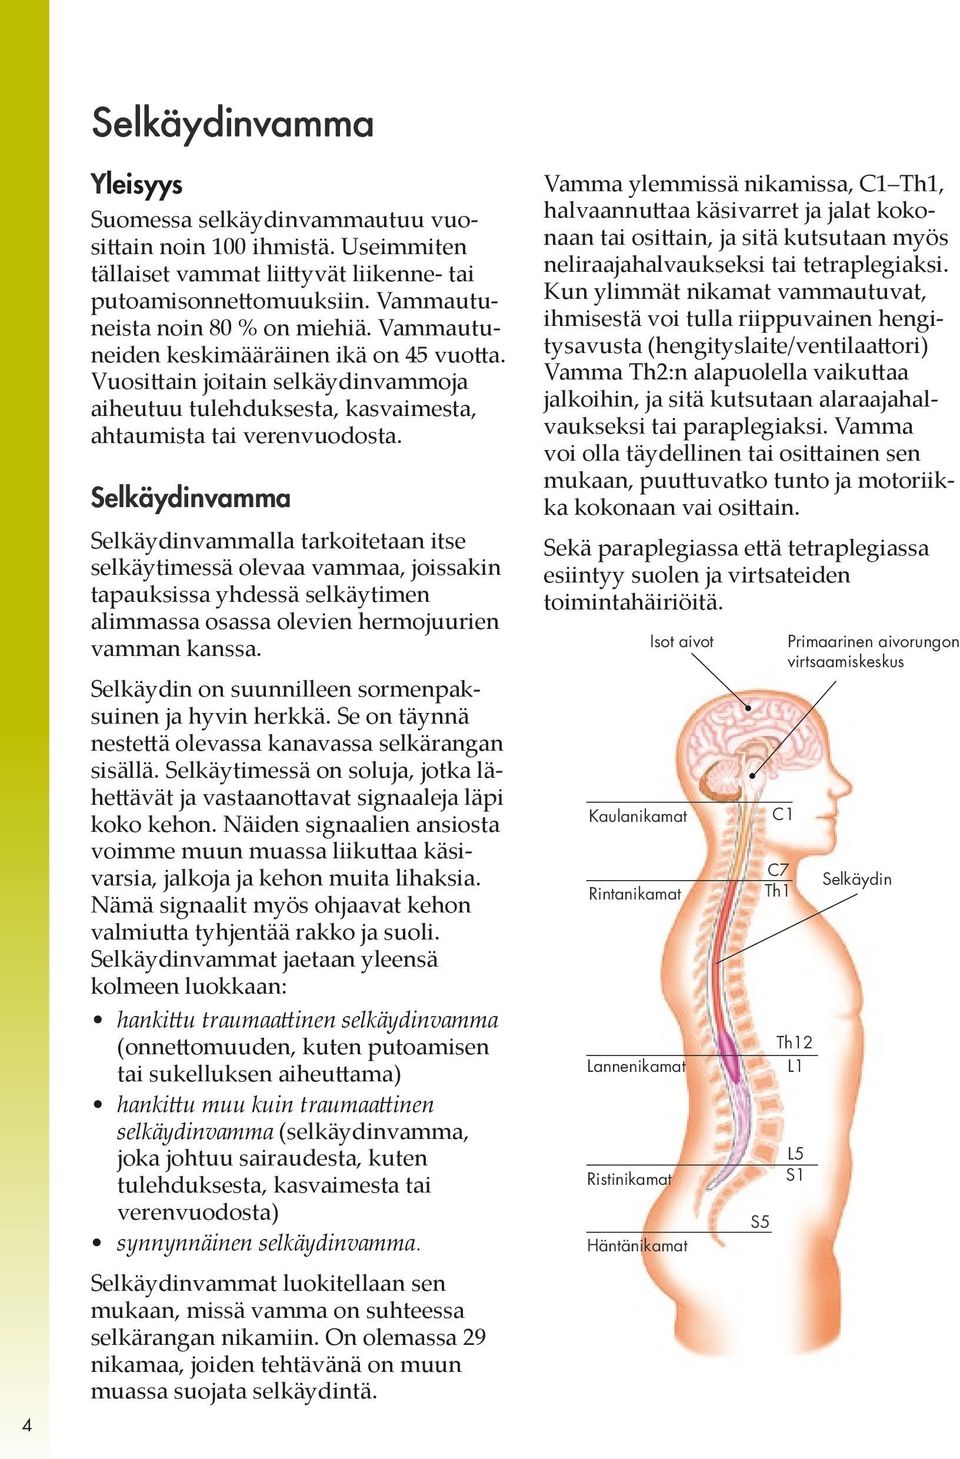 Selkäydinvamma Selkäydinvammalla tarkoitetaan itse selkäytimessä olevaa vammaa, joissakin tapauksissa yhdessä selkäytimen alimmassa osassa olevien hermojuurien vamman kanssa.